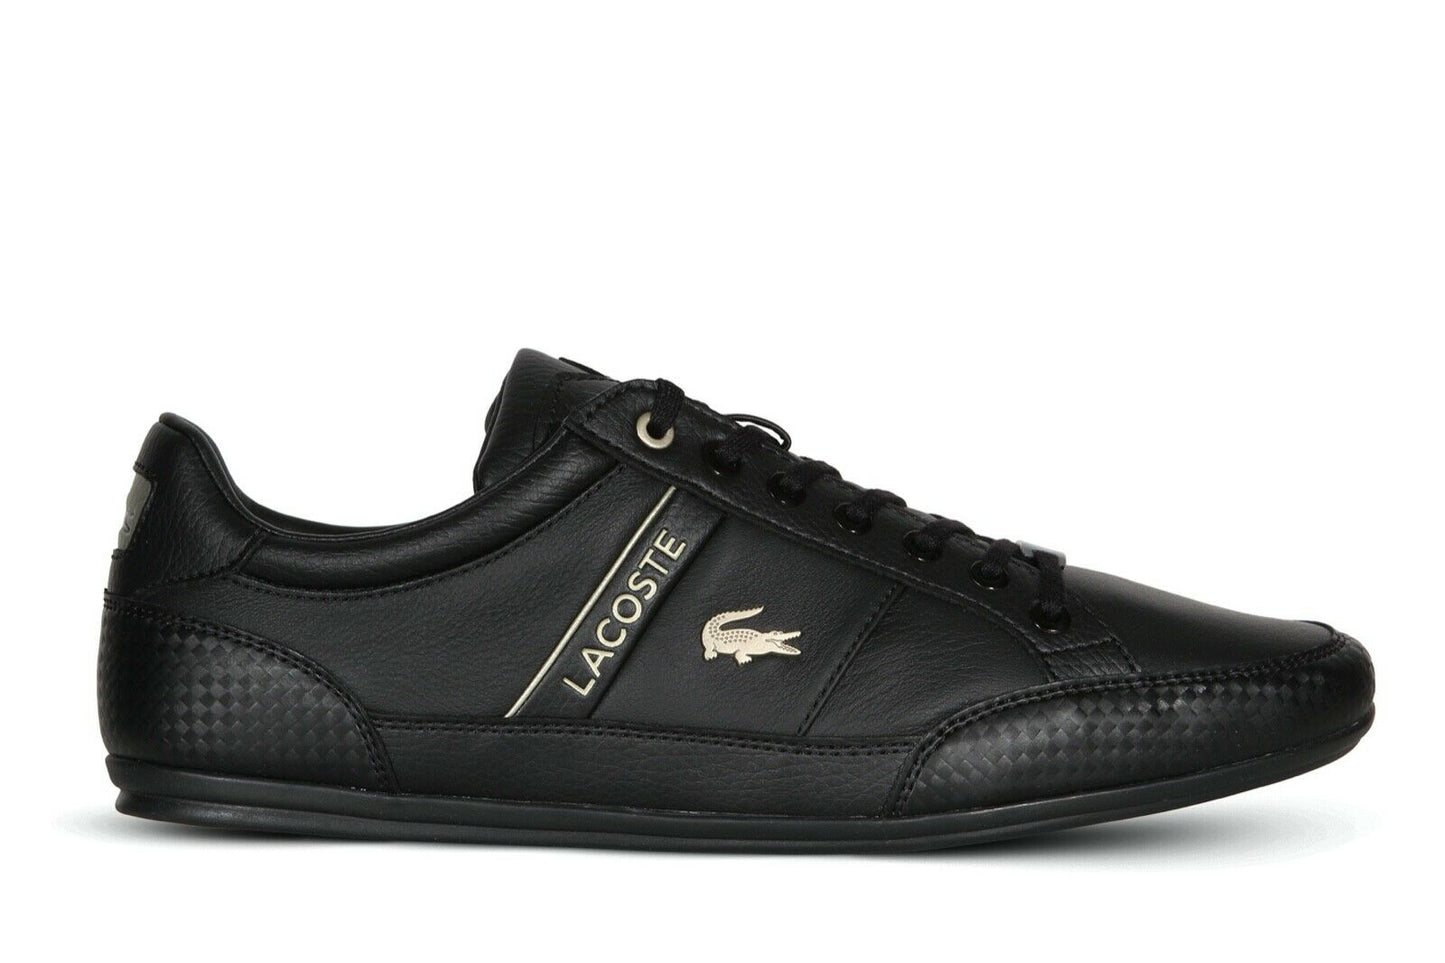 Lacoste Chaymon 0721 3 Men’s Sneakers in Black 7-41CMA006302H